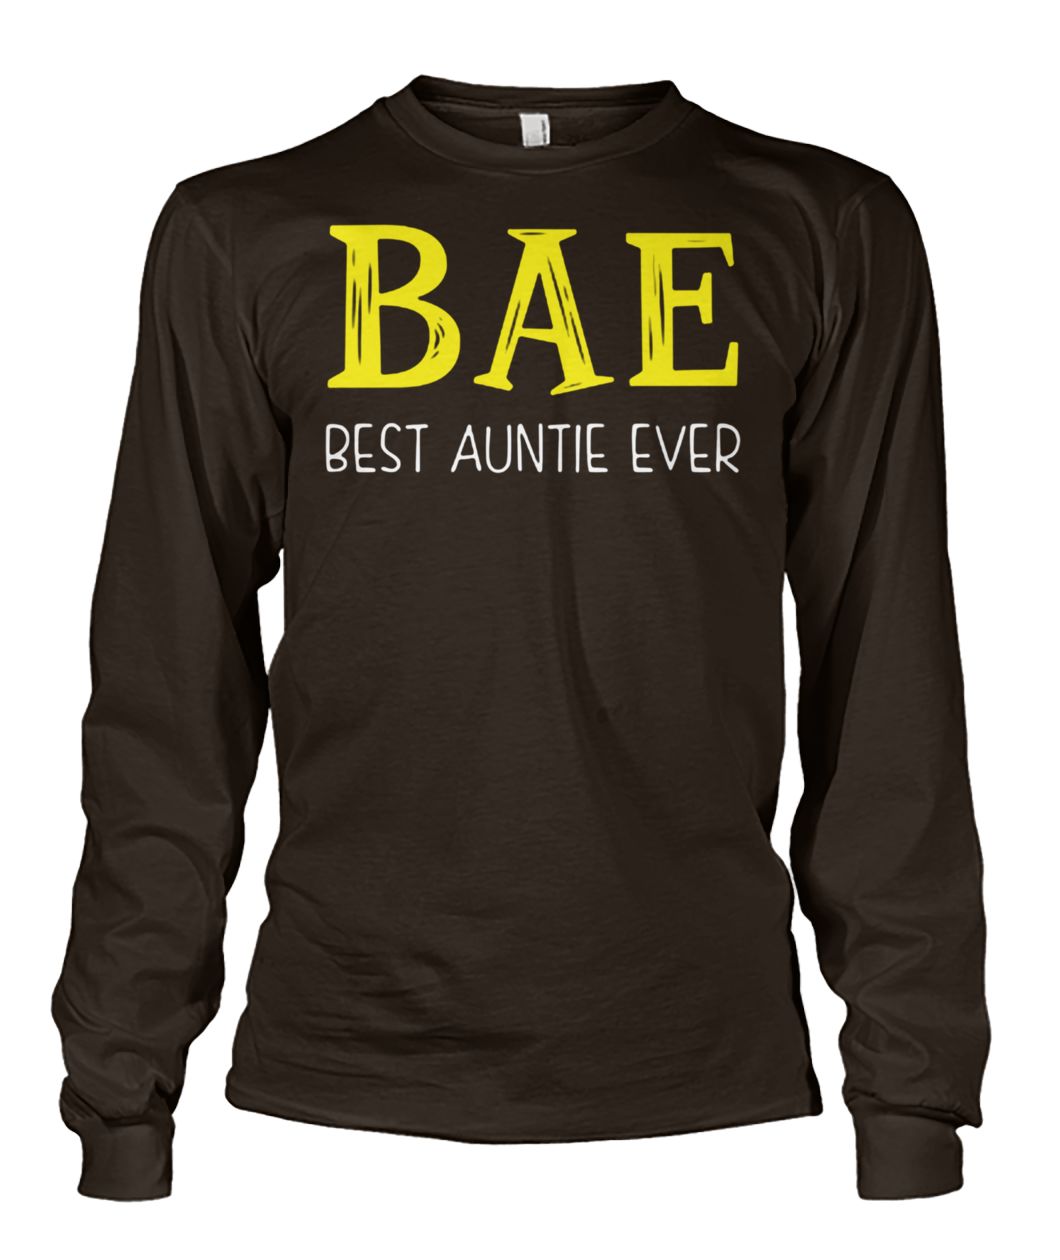 Bae best auntie ever unisex long sleeve